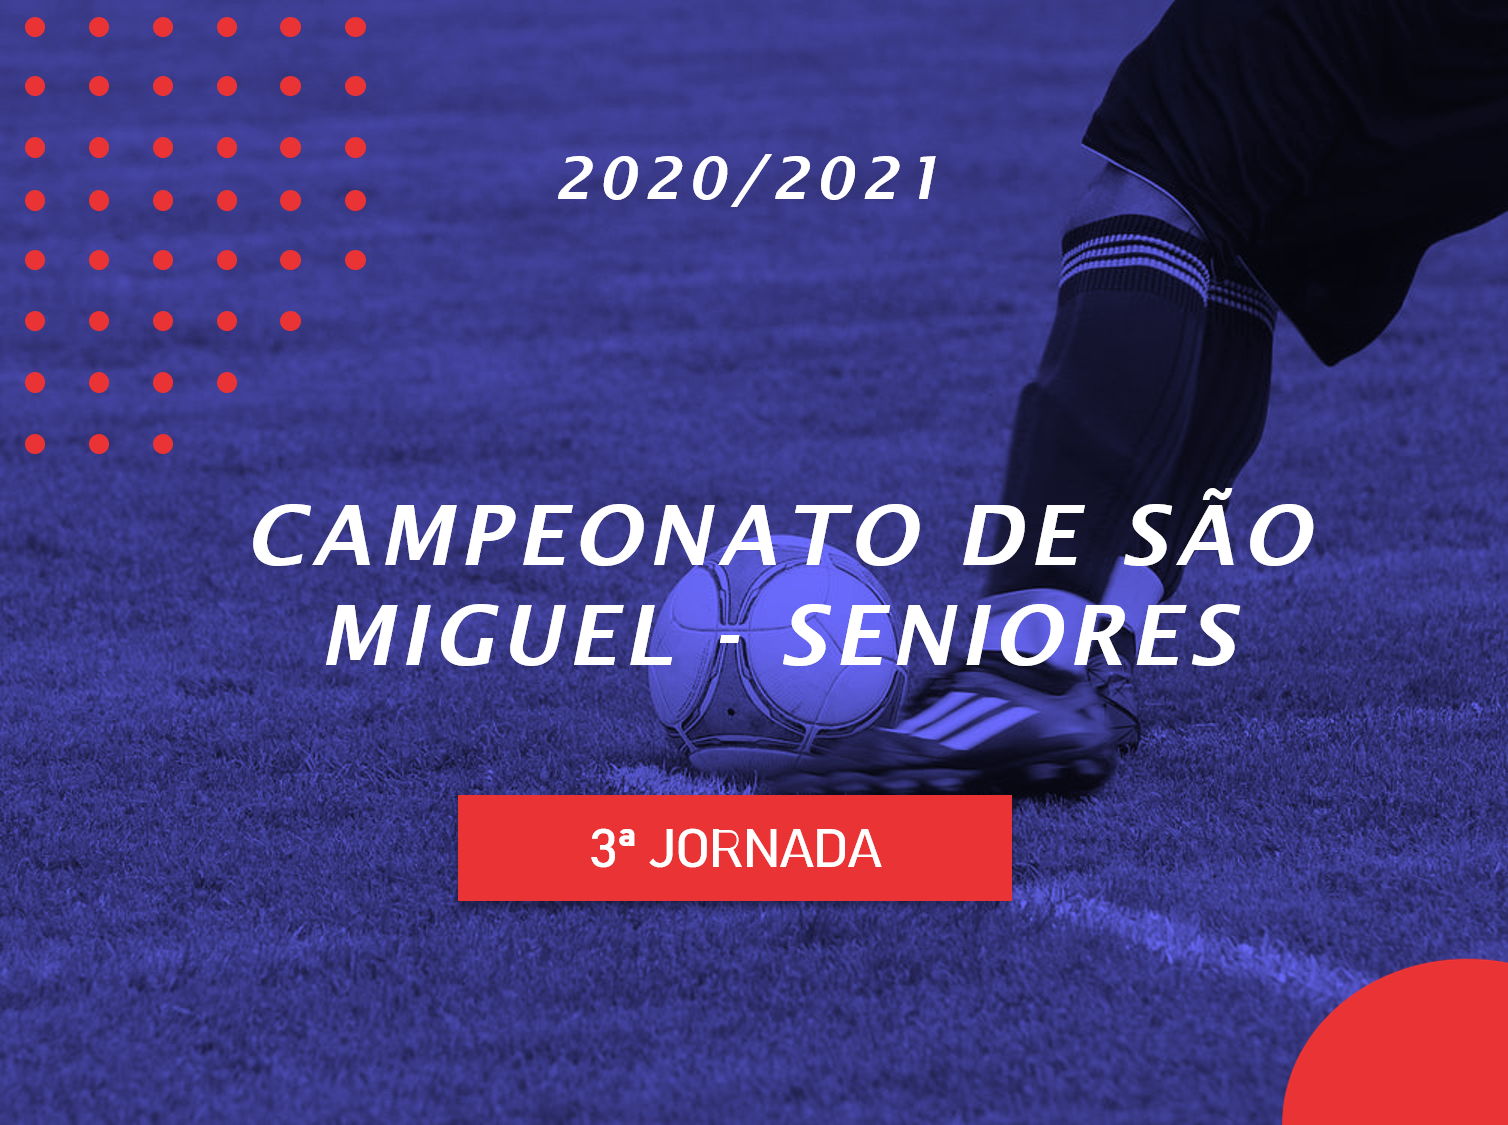 Campeonato de São Miguel - 3ª Jornada - Antevisão